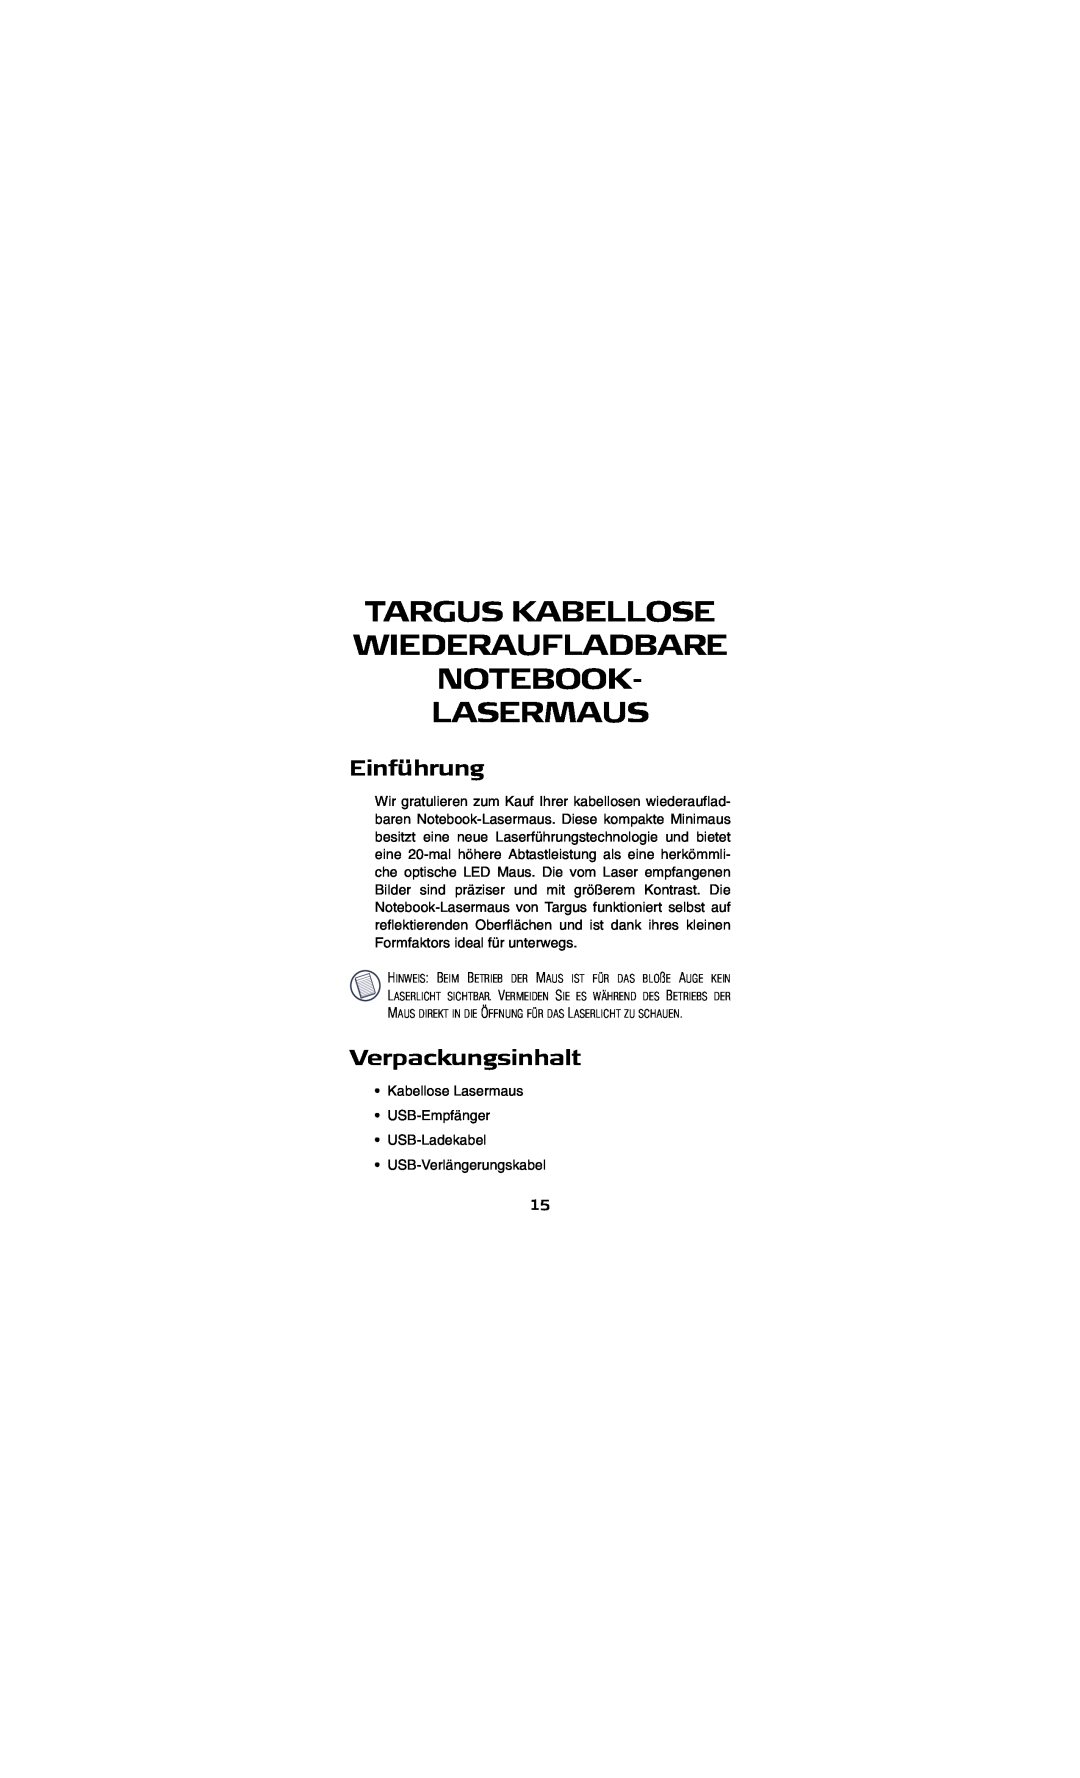 Targus AMW15EU specifications Targus Kabellose Wiederaufladbare Notebook- Lasermaus, Einführung, Verpackungsinhalt 